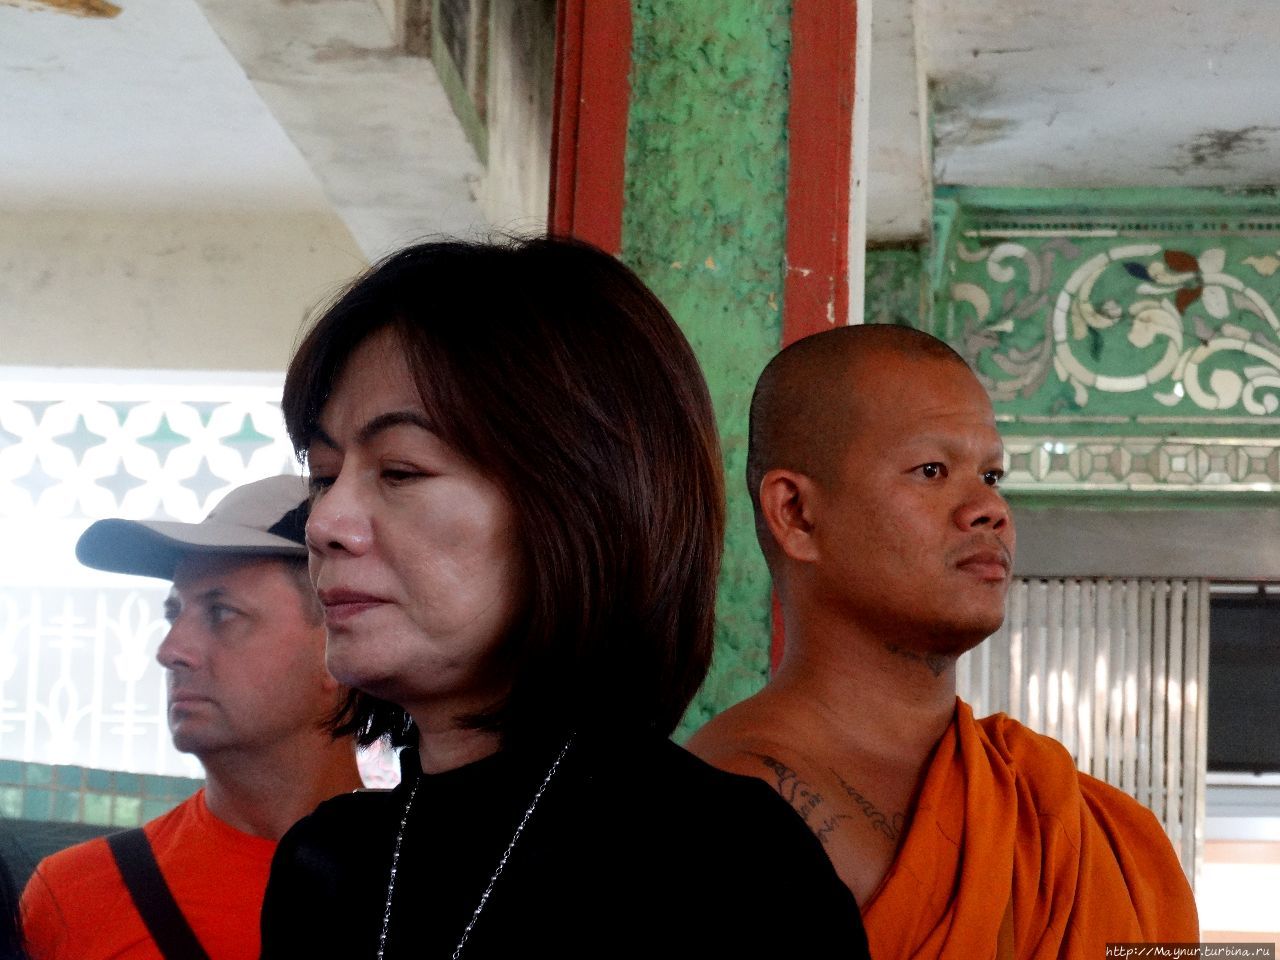 Три  лица — три народности. Багоу, Мьянма